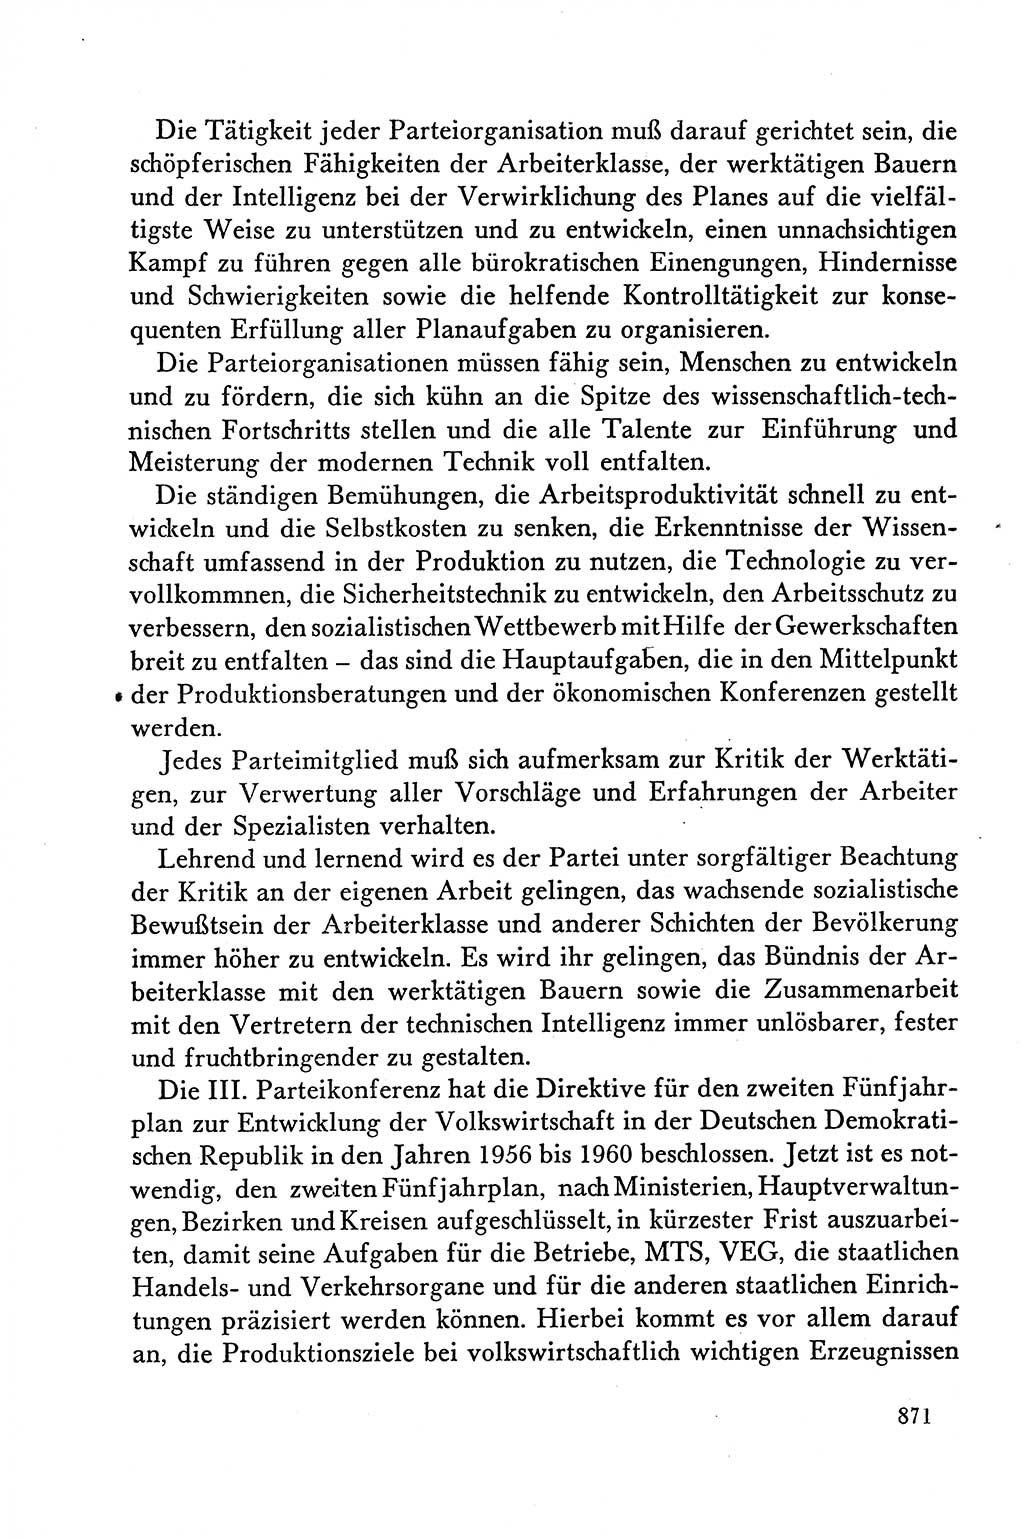 Dokumente der Sozialistischen Einheitspartei Deutschlands (SED) [Deutsche Demokratische Republik (DDR)] 1958-1959, Seite 871 (Dok. SED DDR 1958-1959, S. 871)